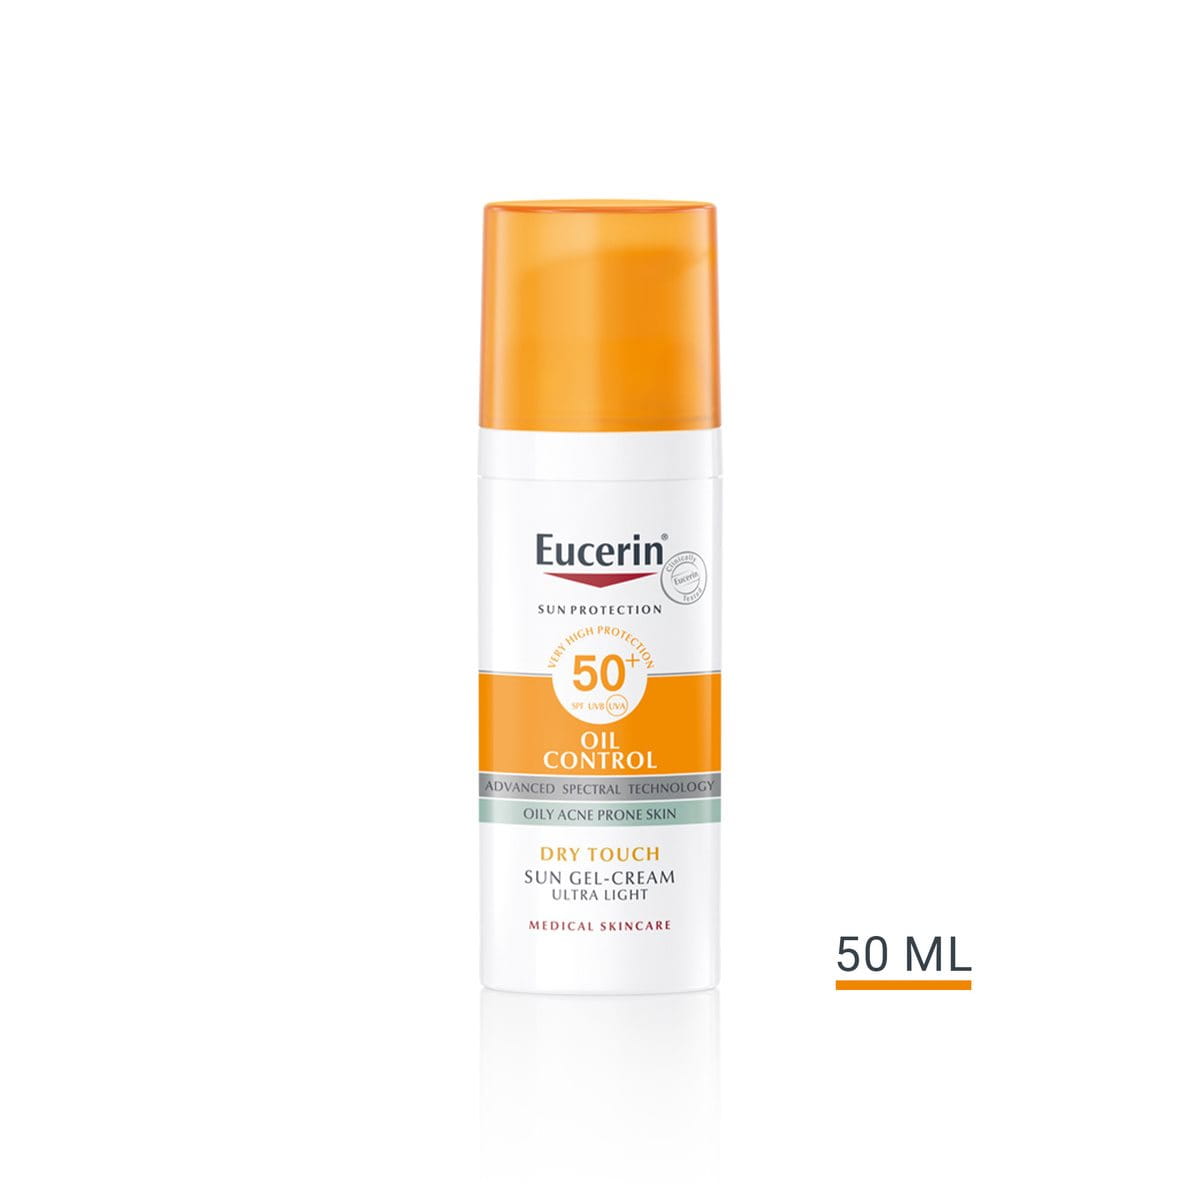 Sun Gel-Cream Oil Control SPF 50+  sunscreen for oily, acne-prone